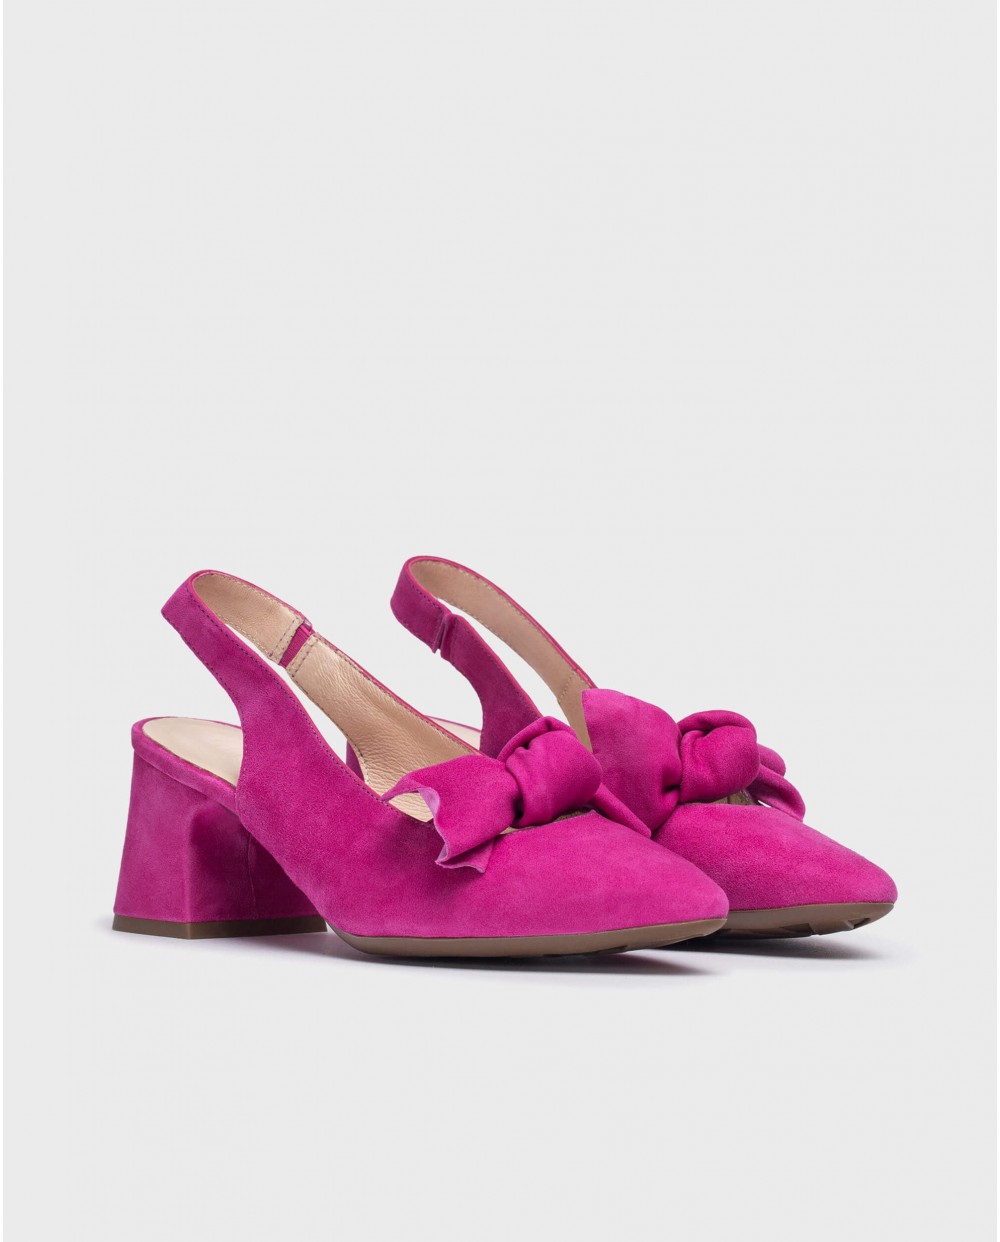 Wonders-Heels-Pink Lexi shoe